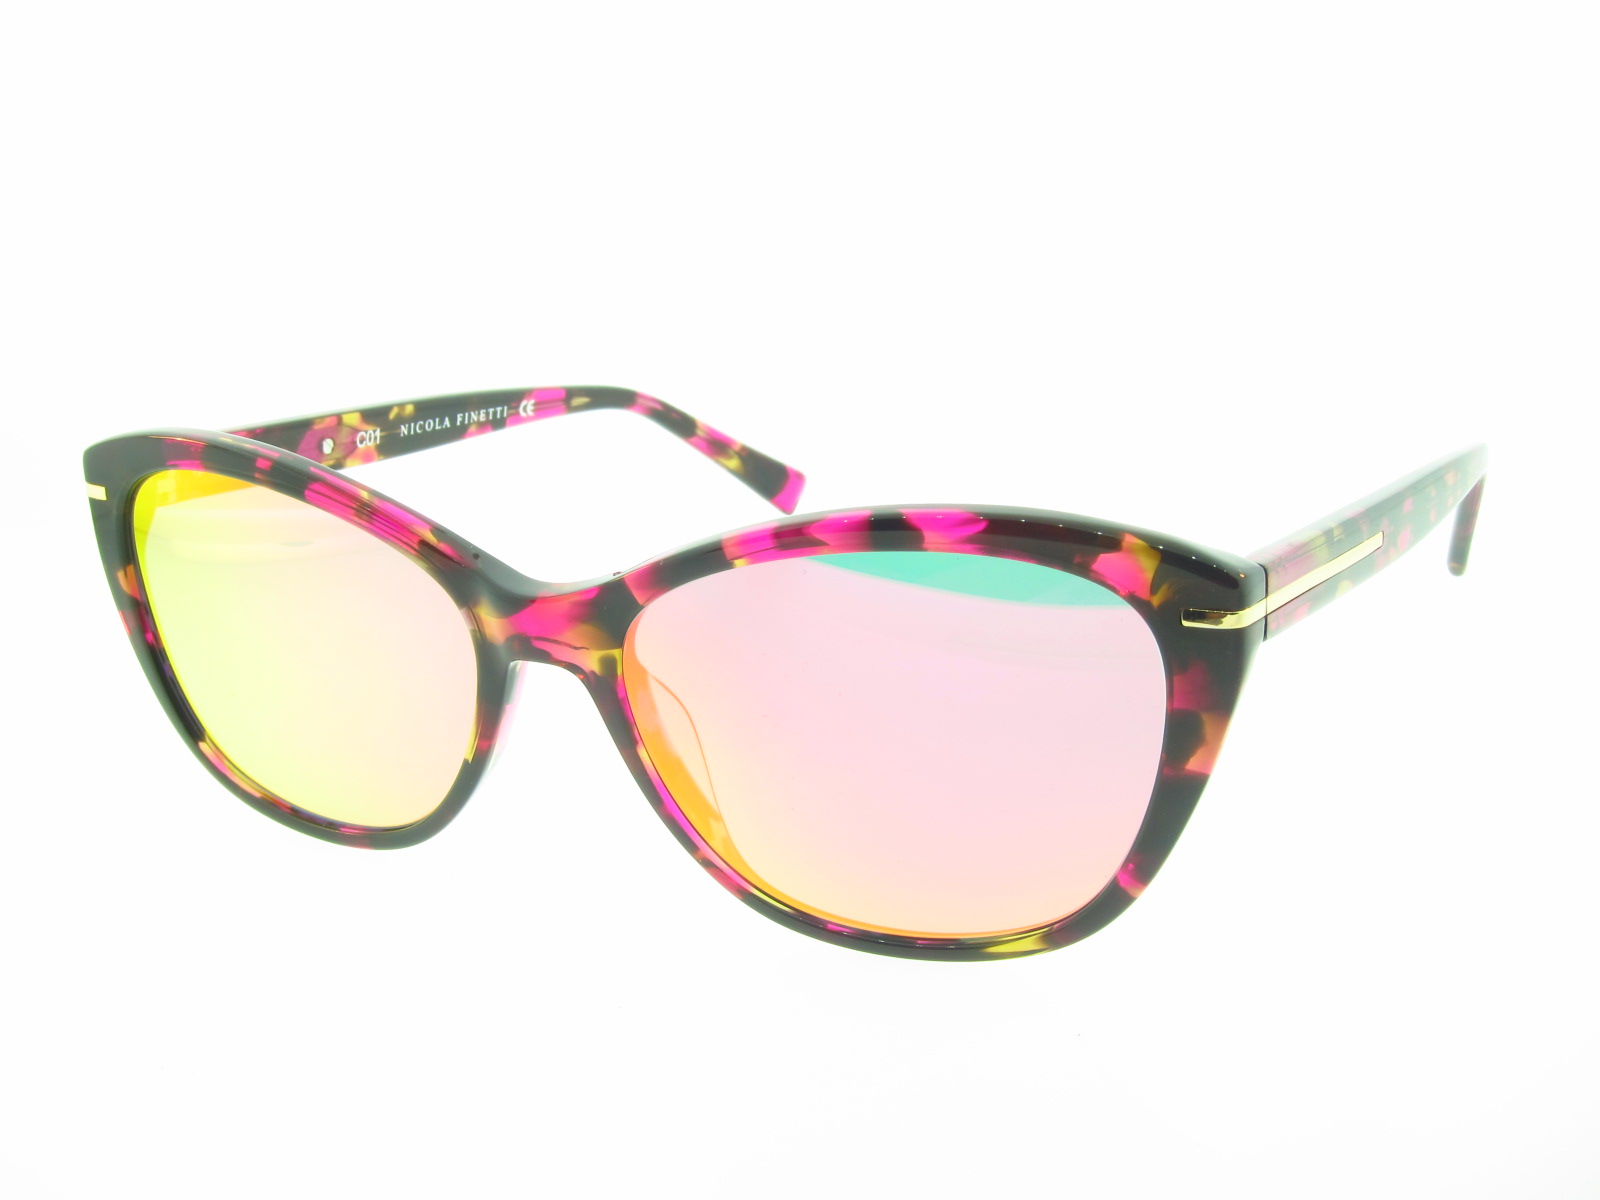 Nicola Finetti Sunglasses – Tiger Vision